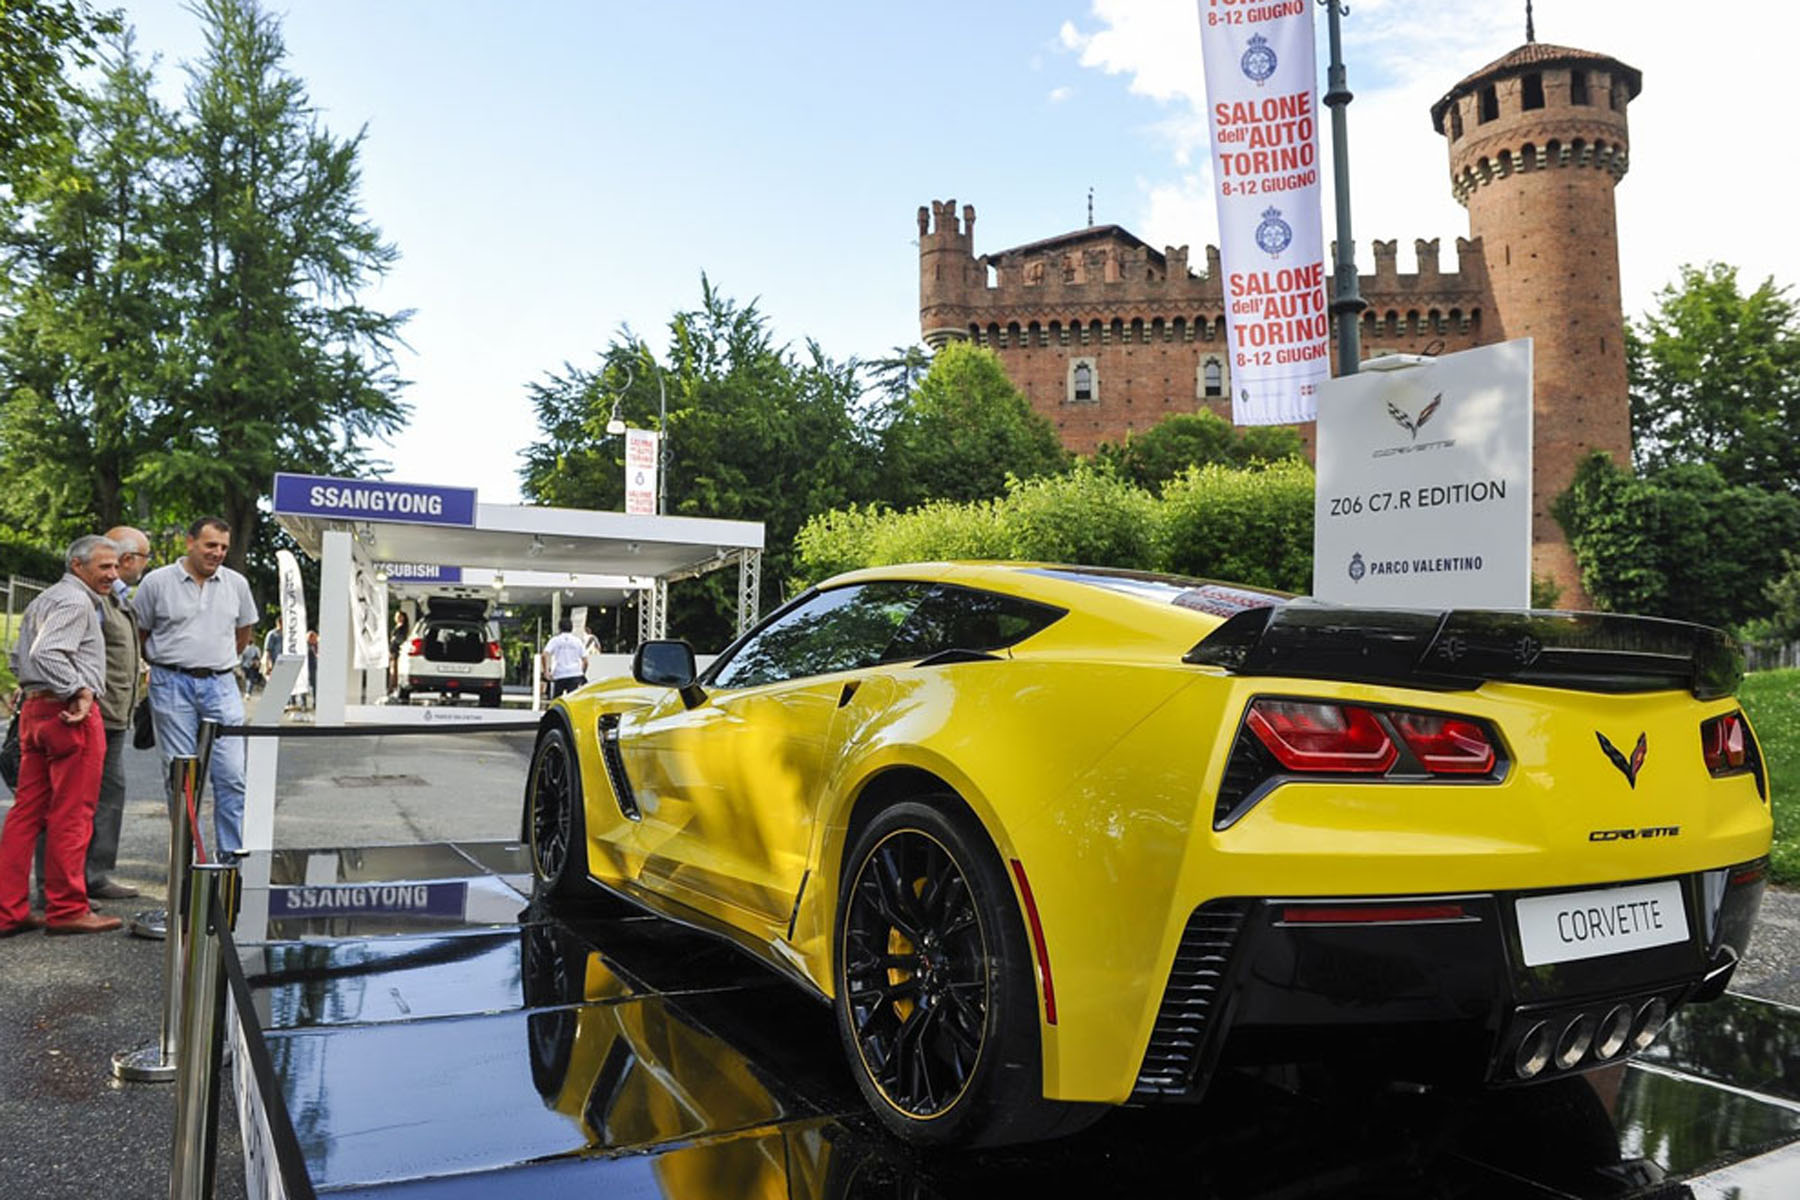 Salone dell'Auto di Torino 2019, a inaugurare l'evento sarà un'auto a guida autonoma